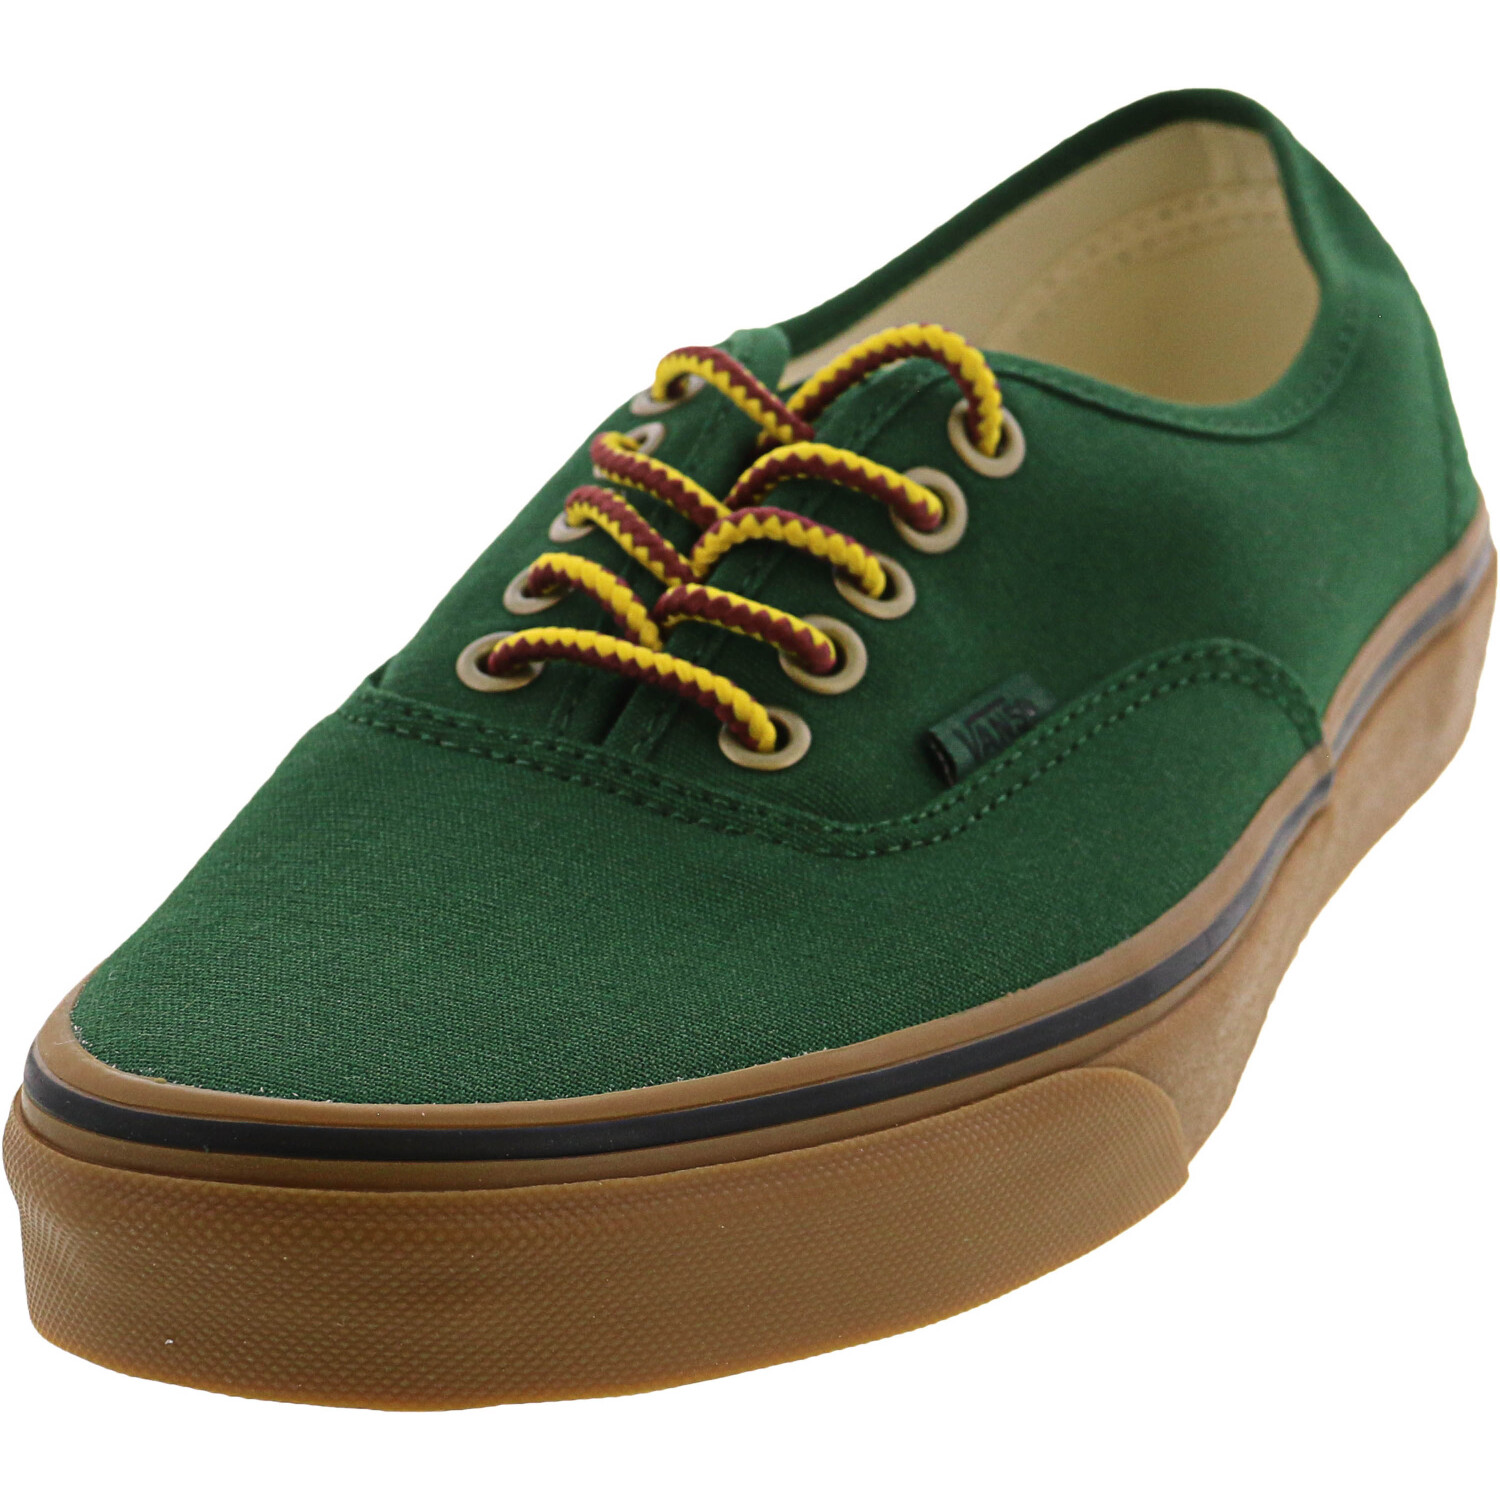 Authentic Gumsole Verdant Green / Mud Gum Ankle-High Canvas Skateboarding Shoe - 11M 9.5M Walmart.com